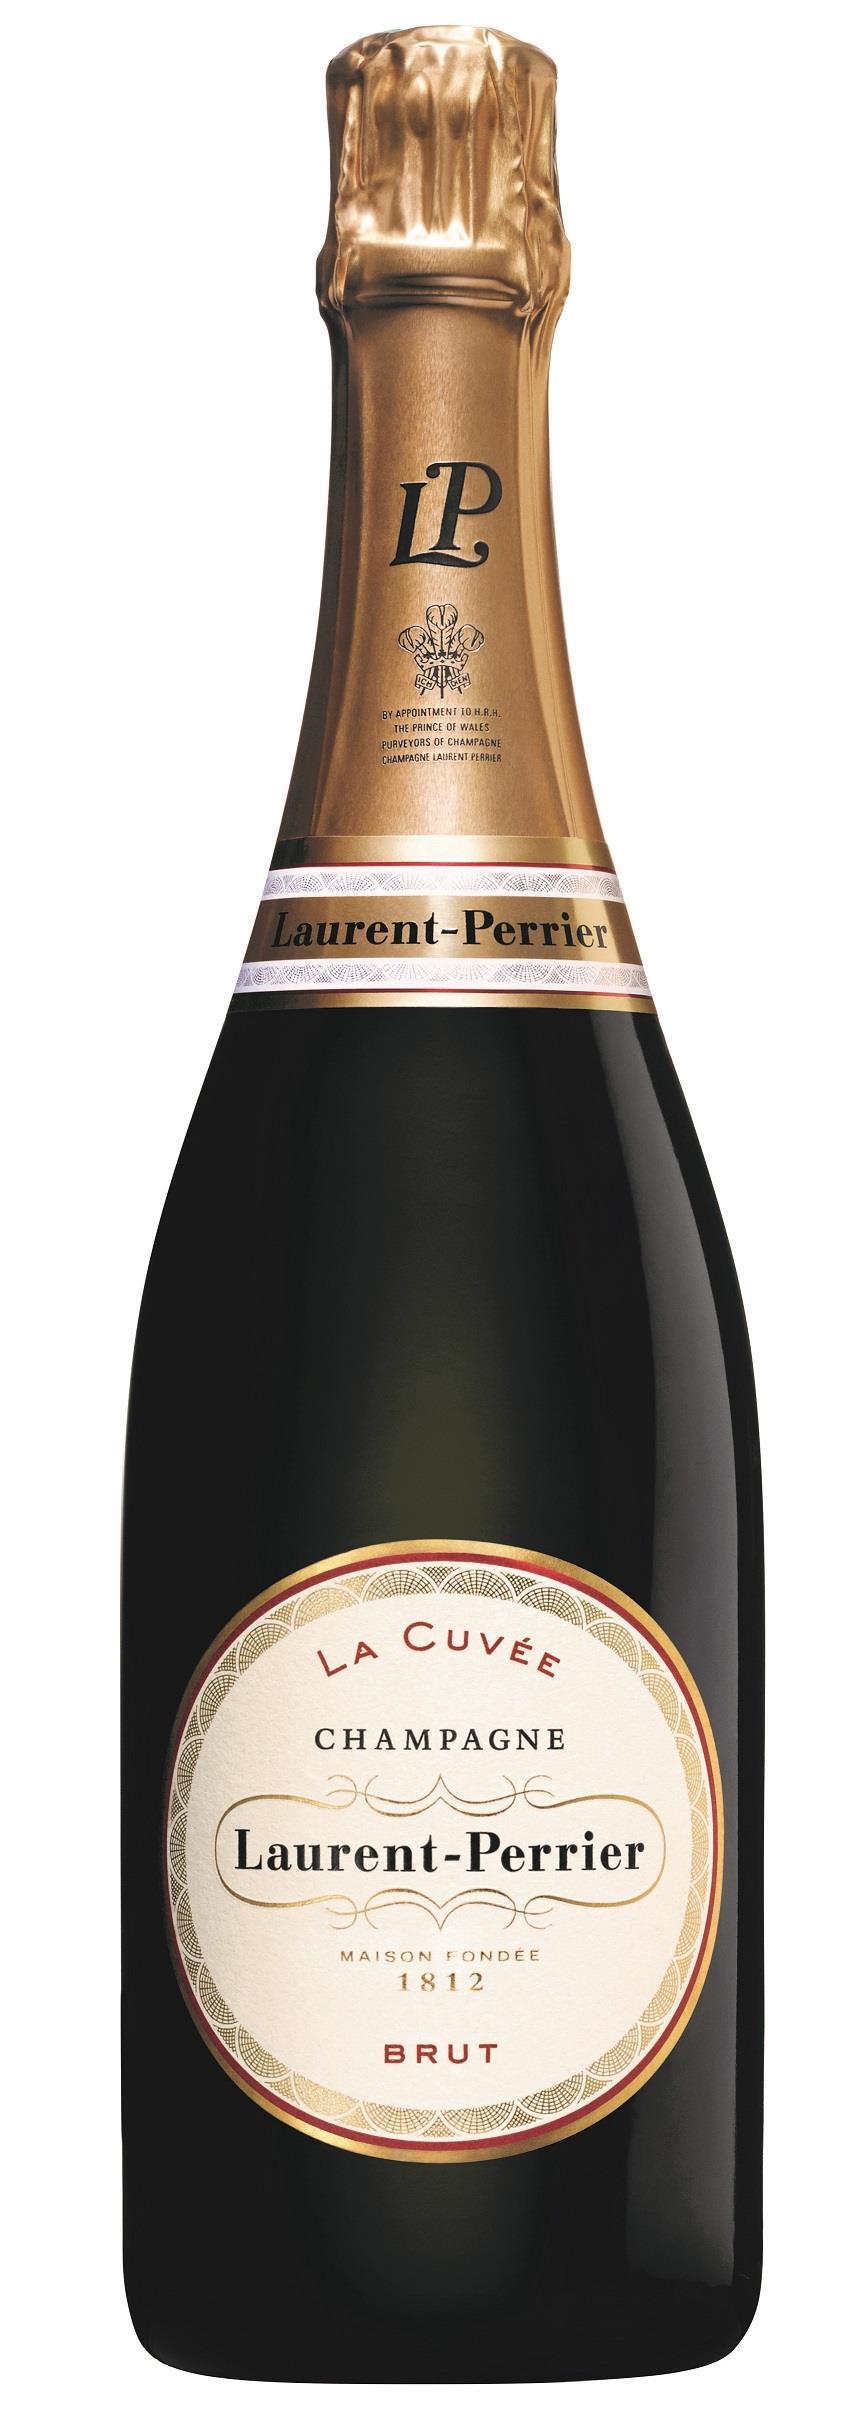 Champagner Laurent-Perrier La Cuvée Brut von Laurent-Perrier